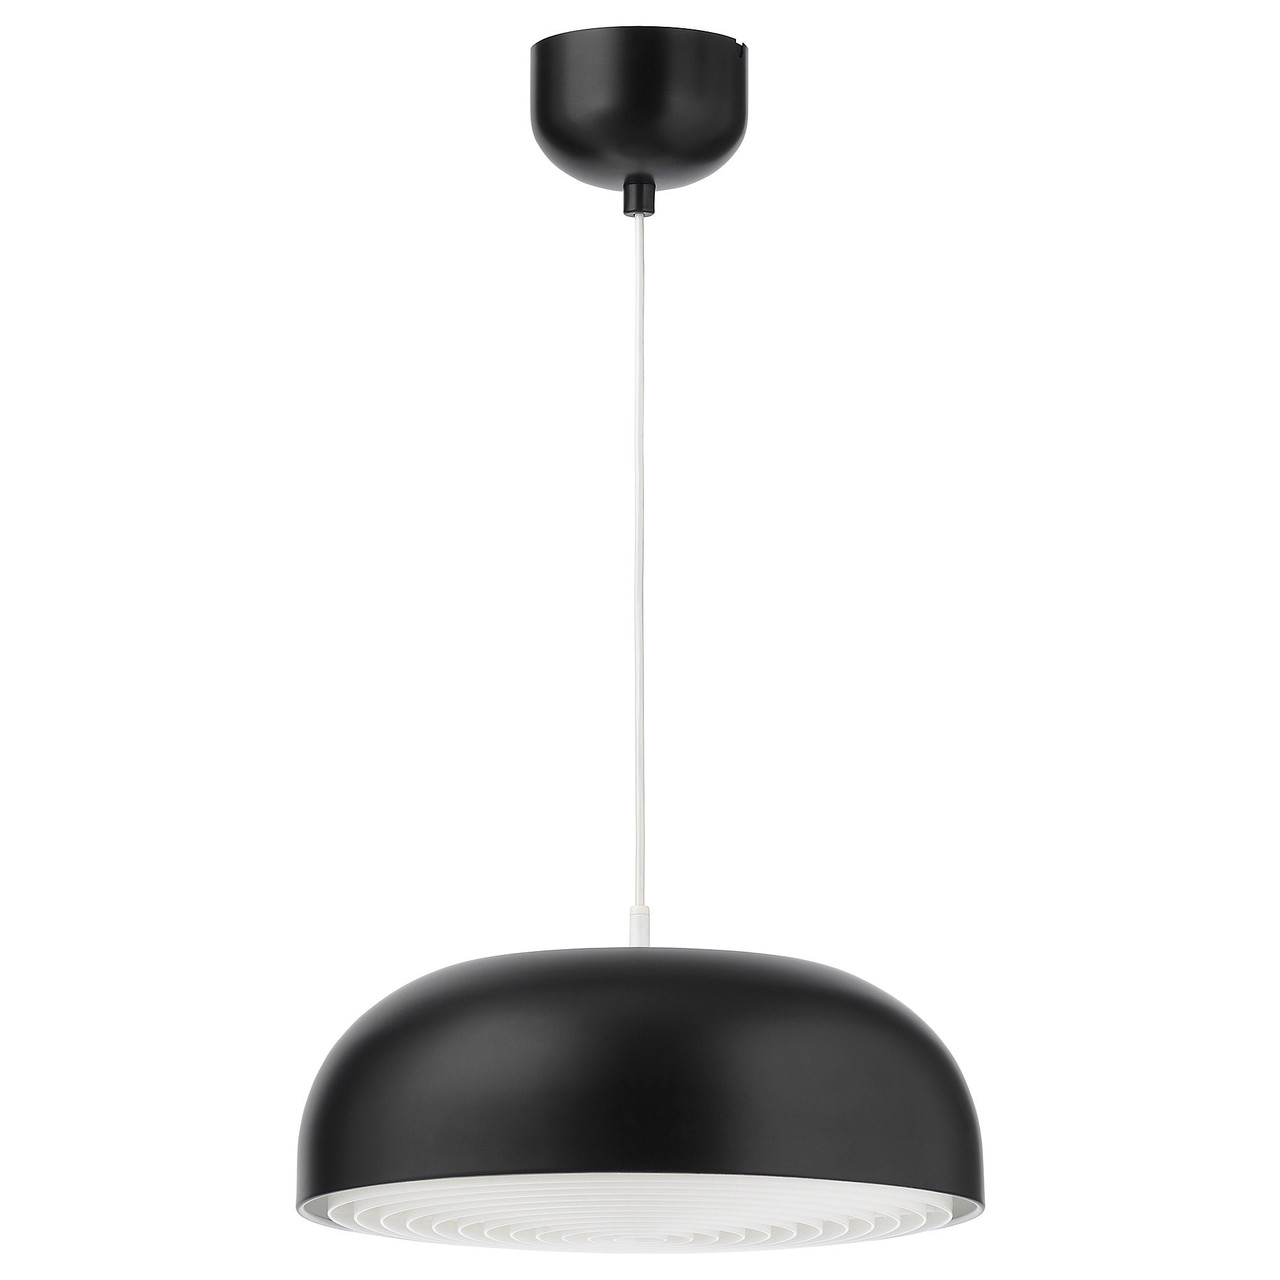 Подвесной светильник НИМОНЕ диаметр 40 см. антрацит ИКЕА, IKEA